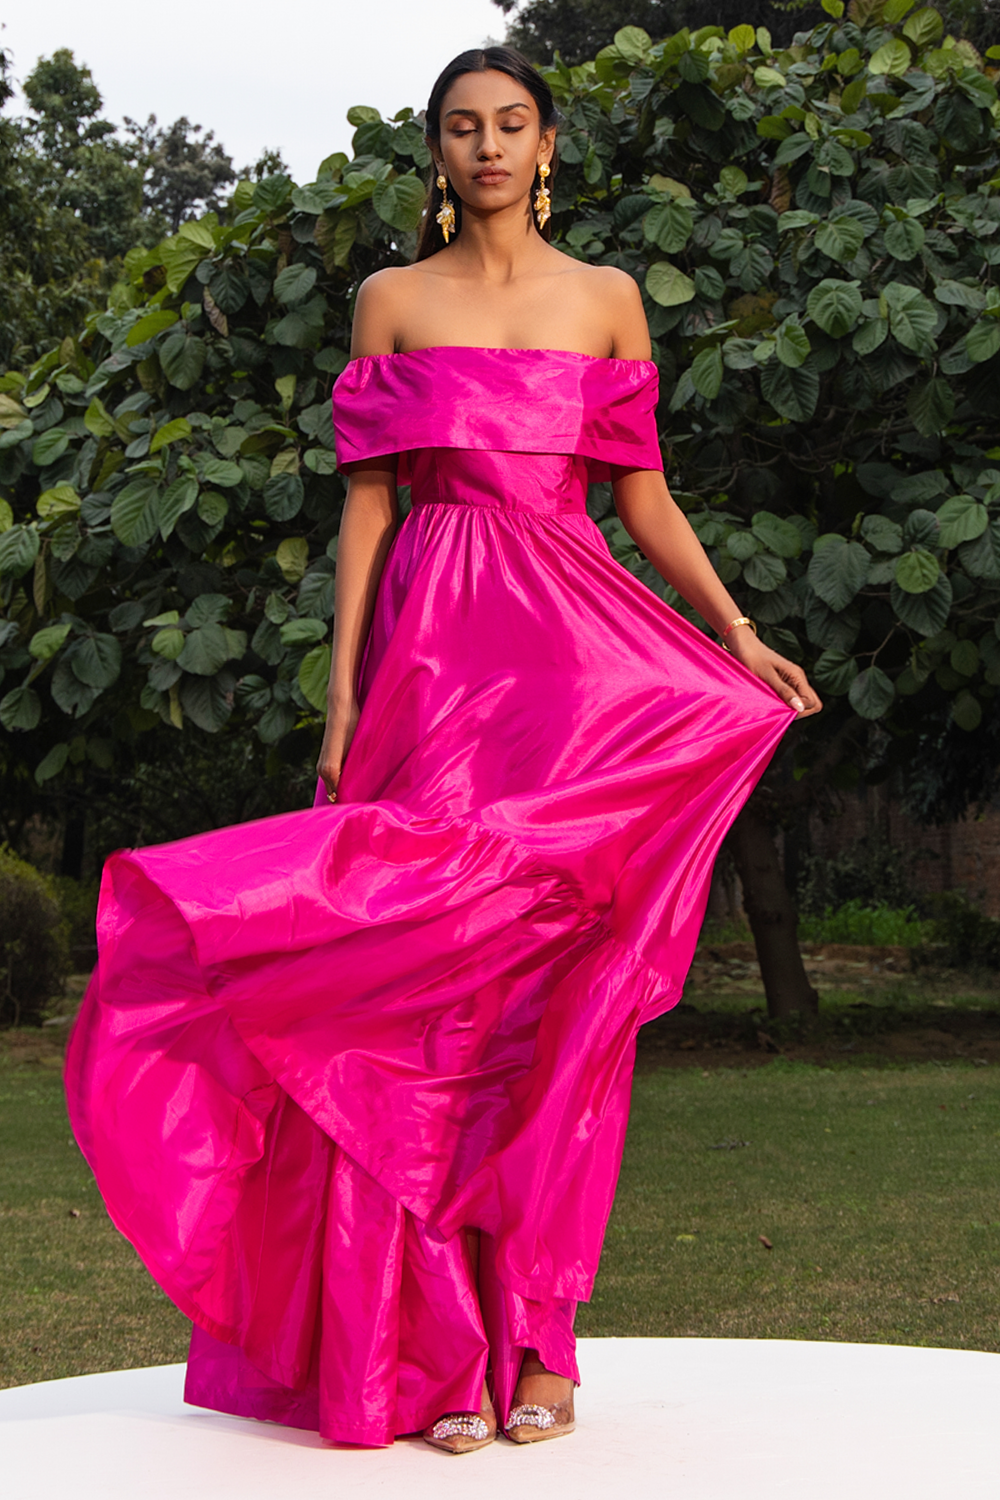 Mirage Fuchsia Pink Dress